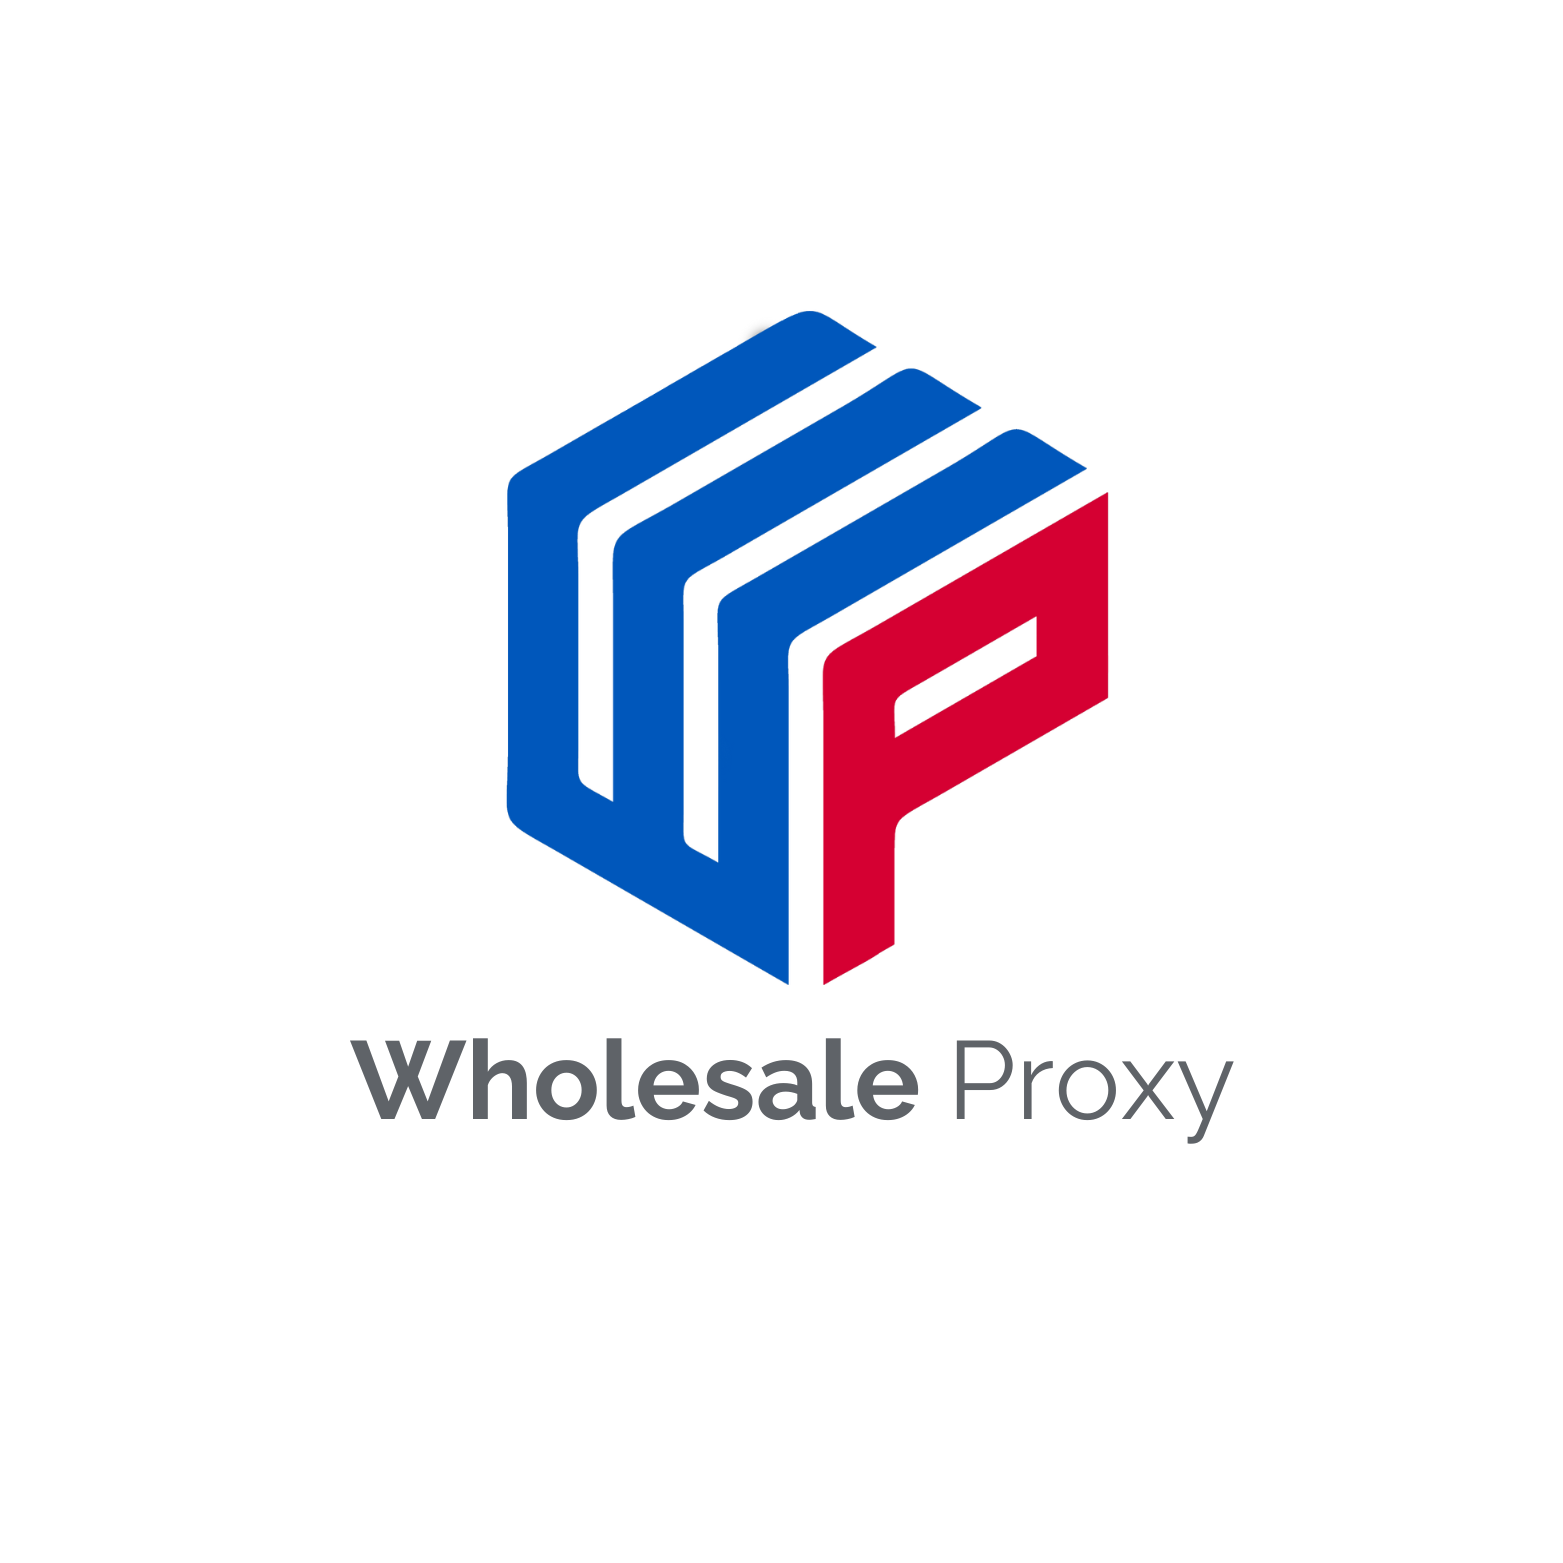 Wholesale Proxy